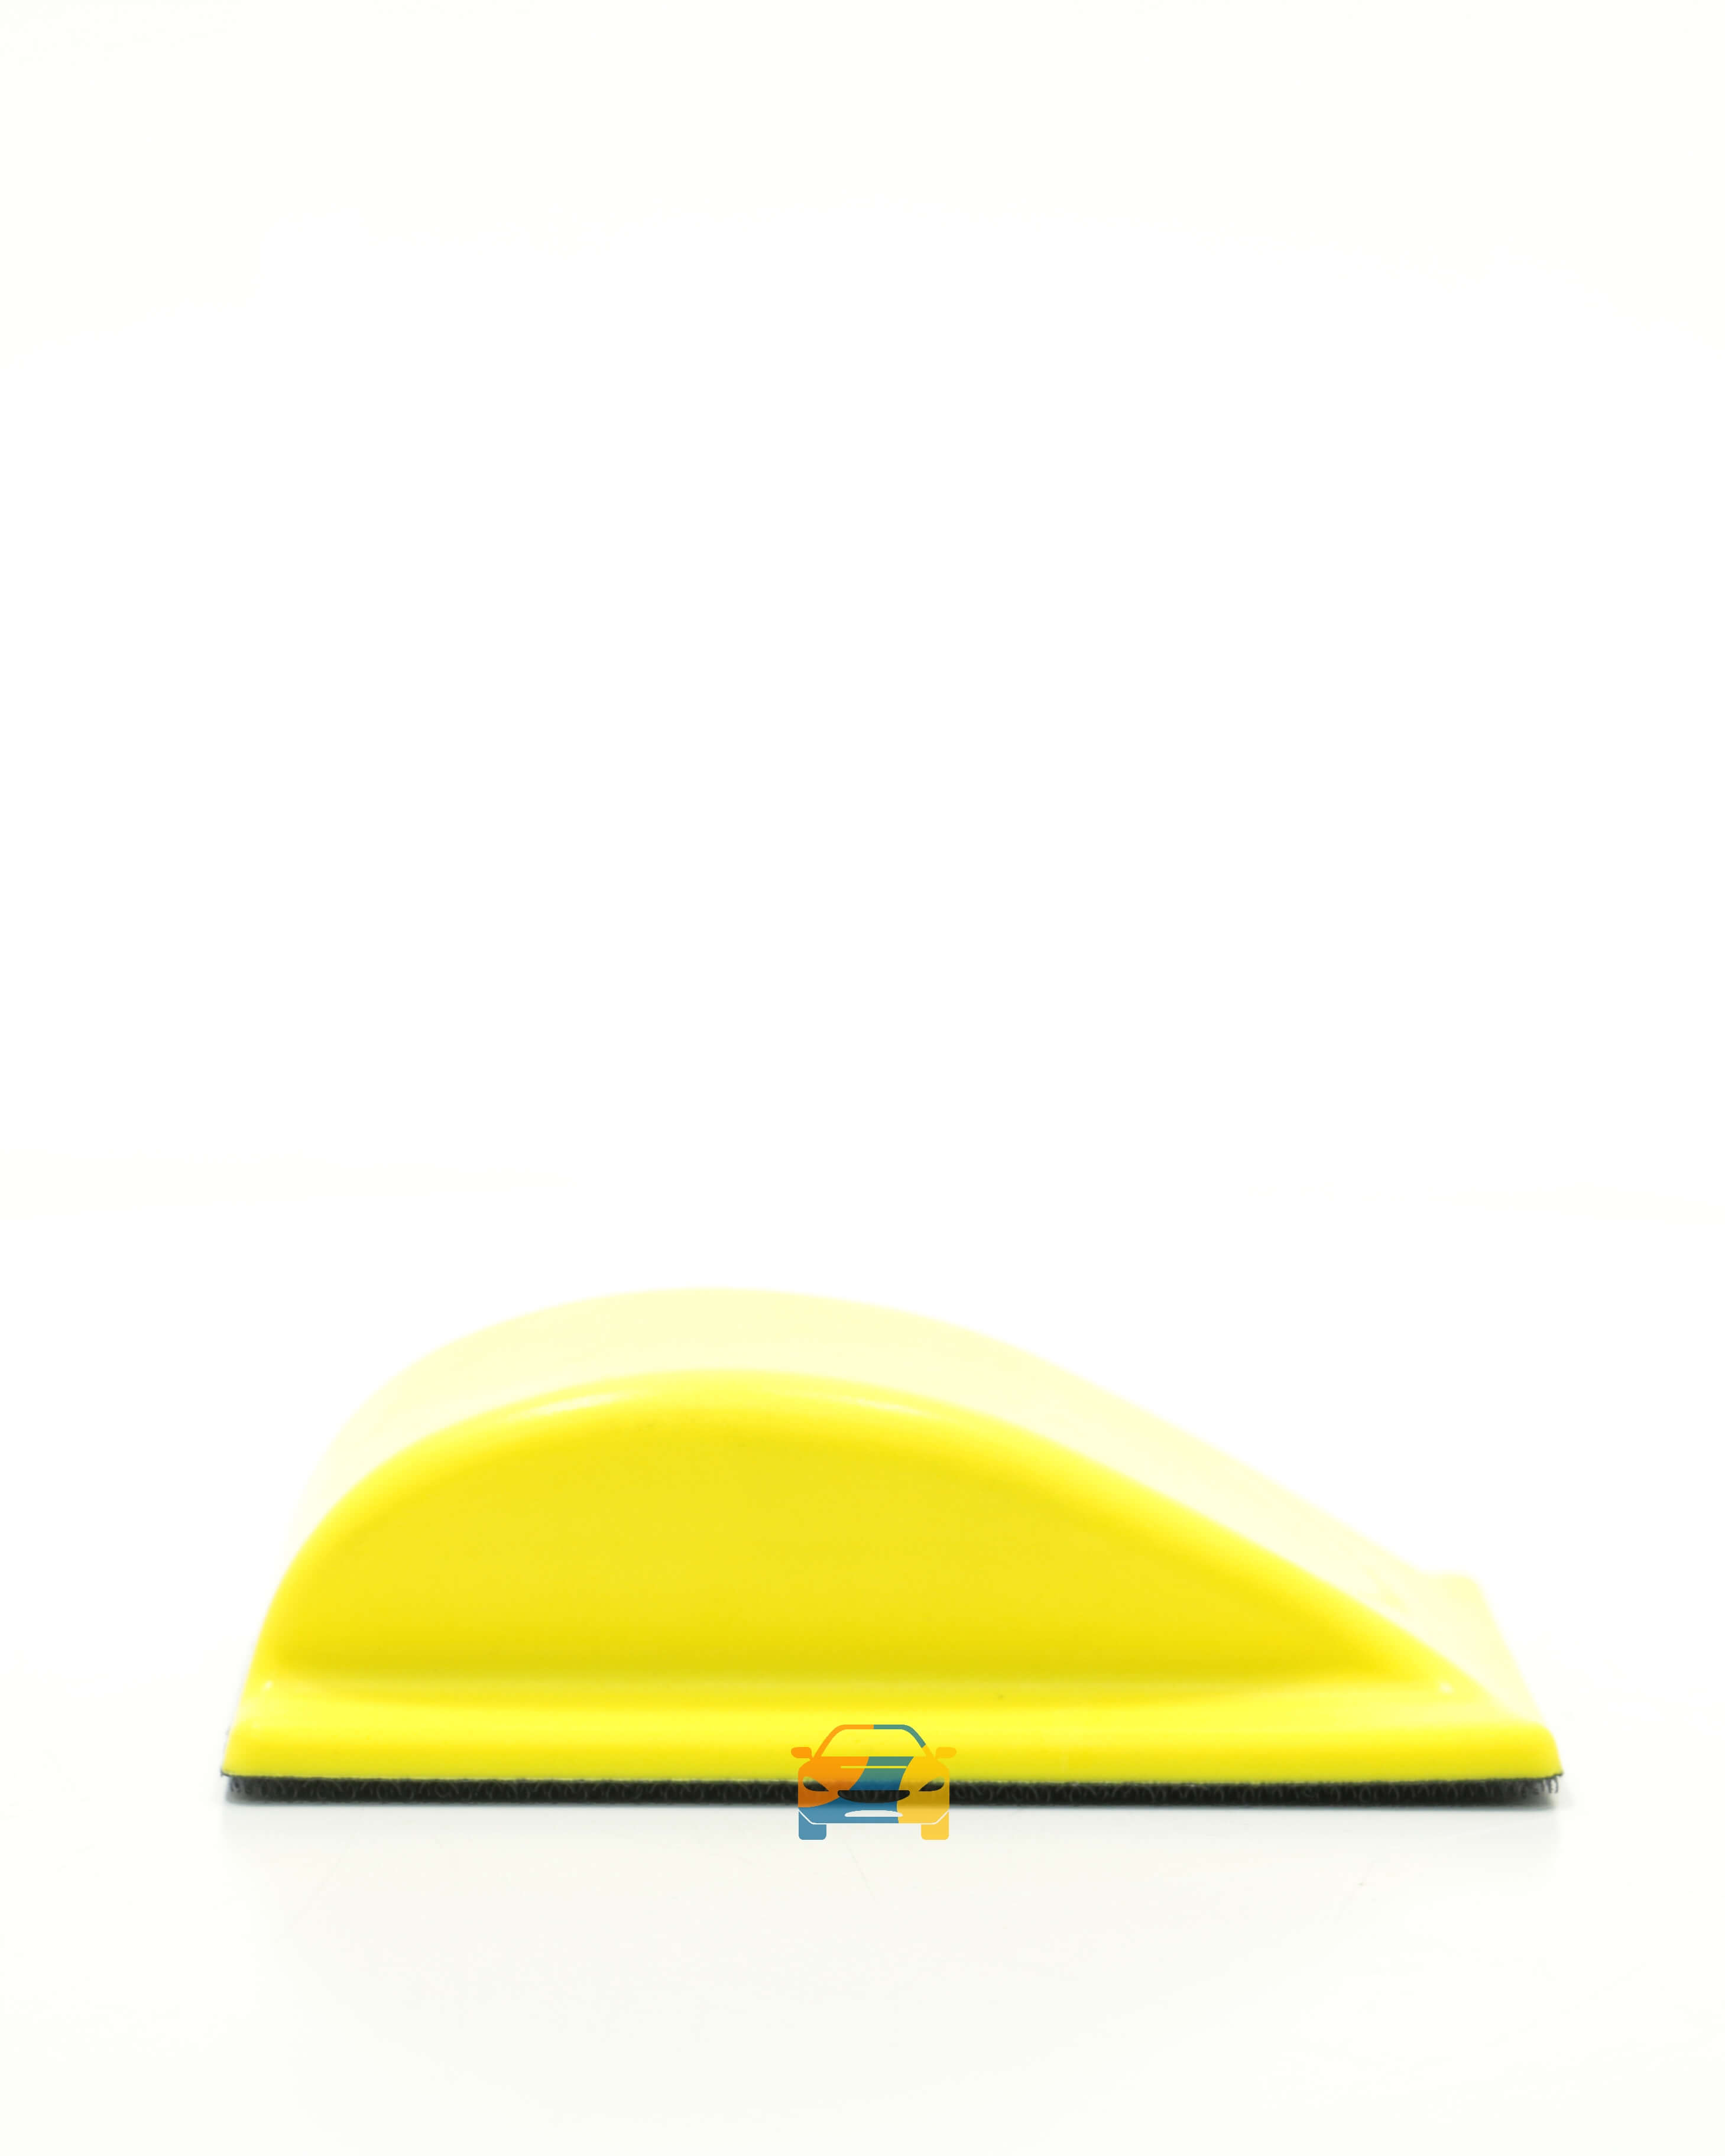 Рубанок Kiwix желтый полужесткий 70х125мм.